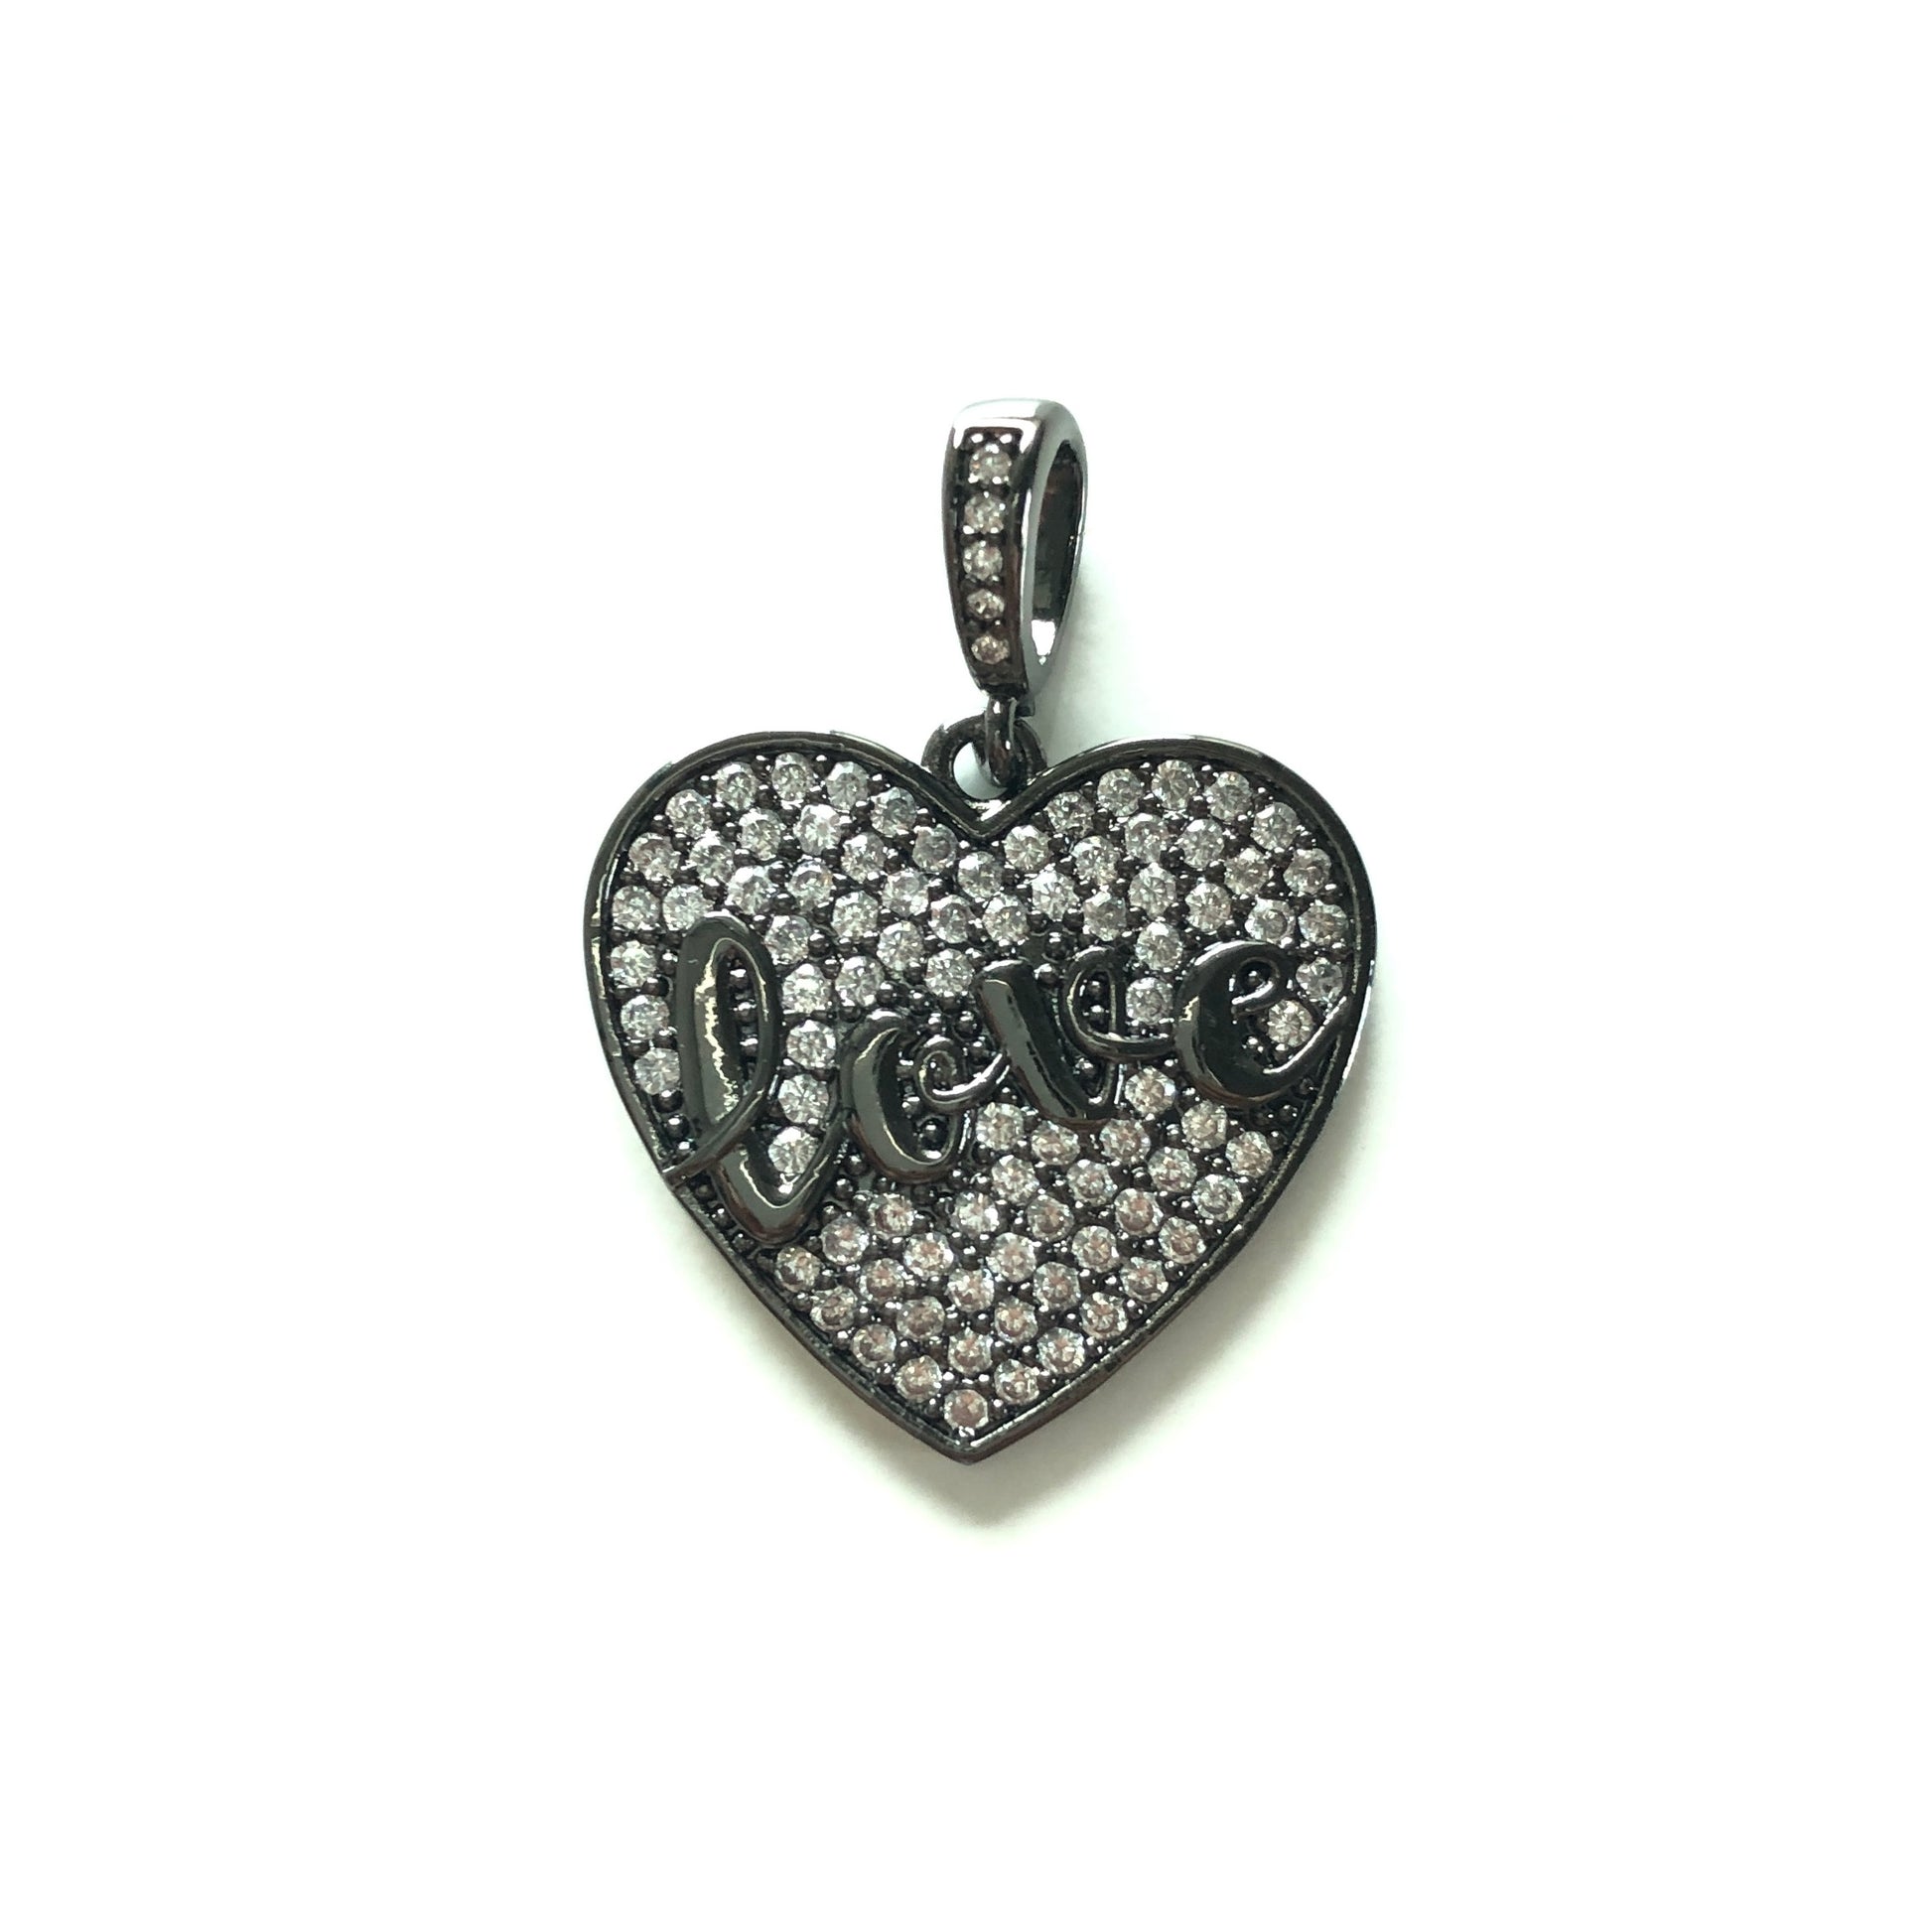 10pcs/lot 25*24mm CZ Paved Love Heart Charms Black CZ Paved Charms Hearts Love Letters On Sale Charms Beads Beyond